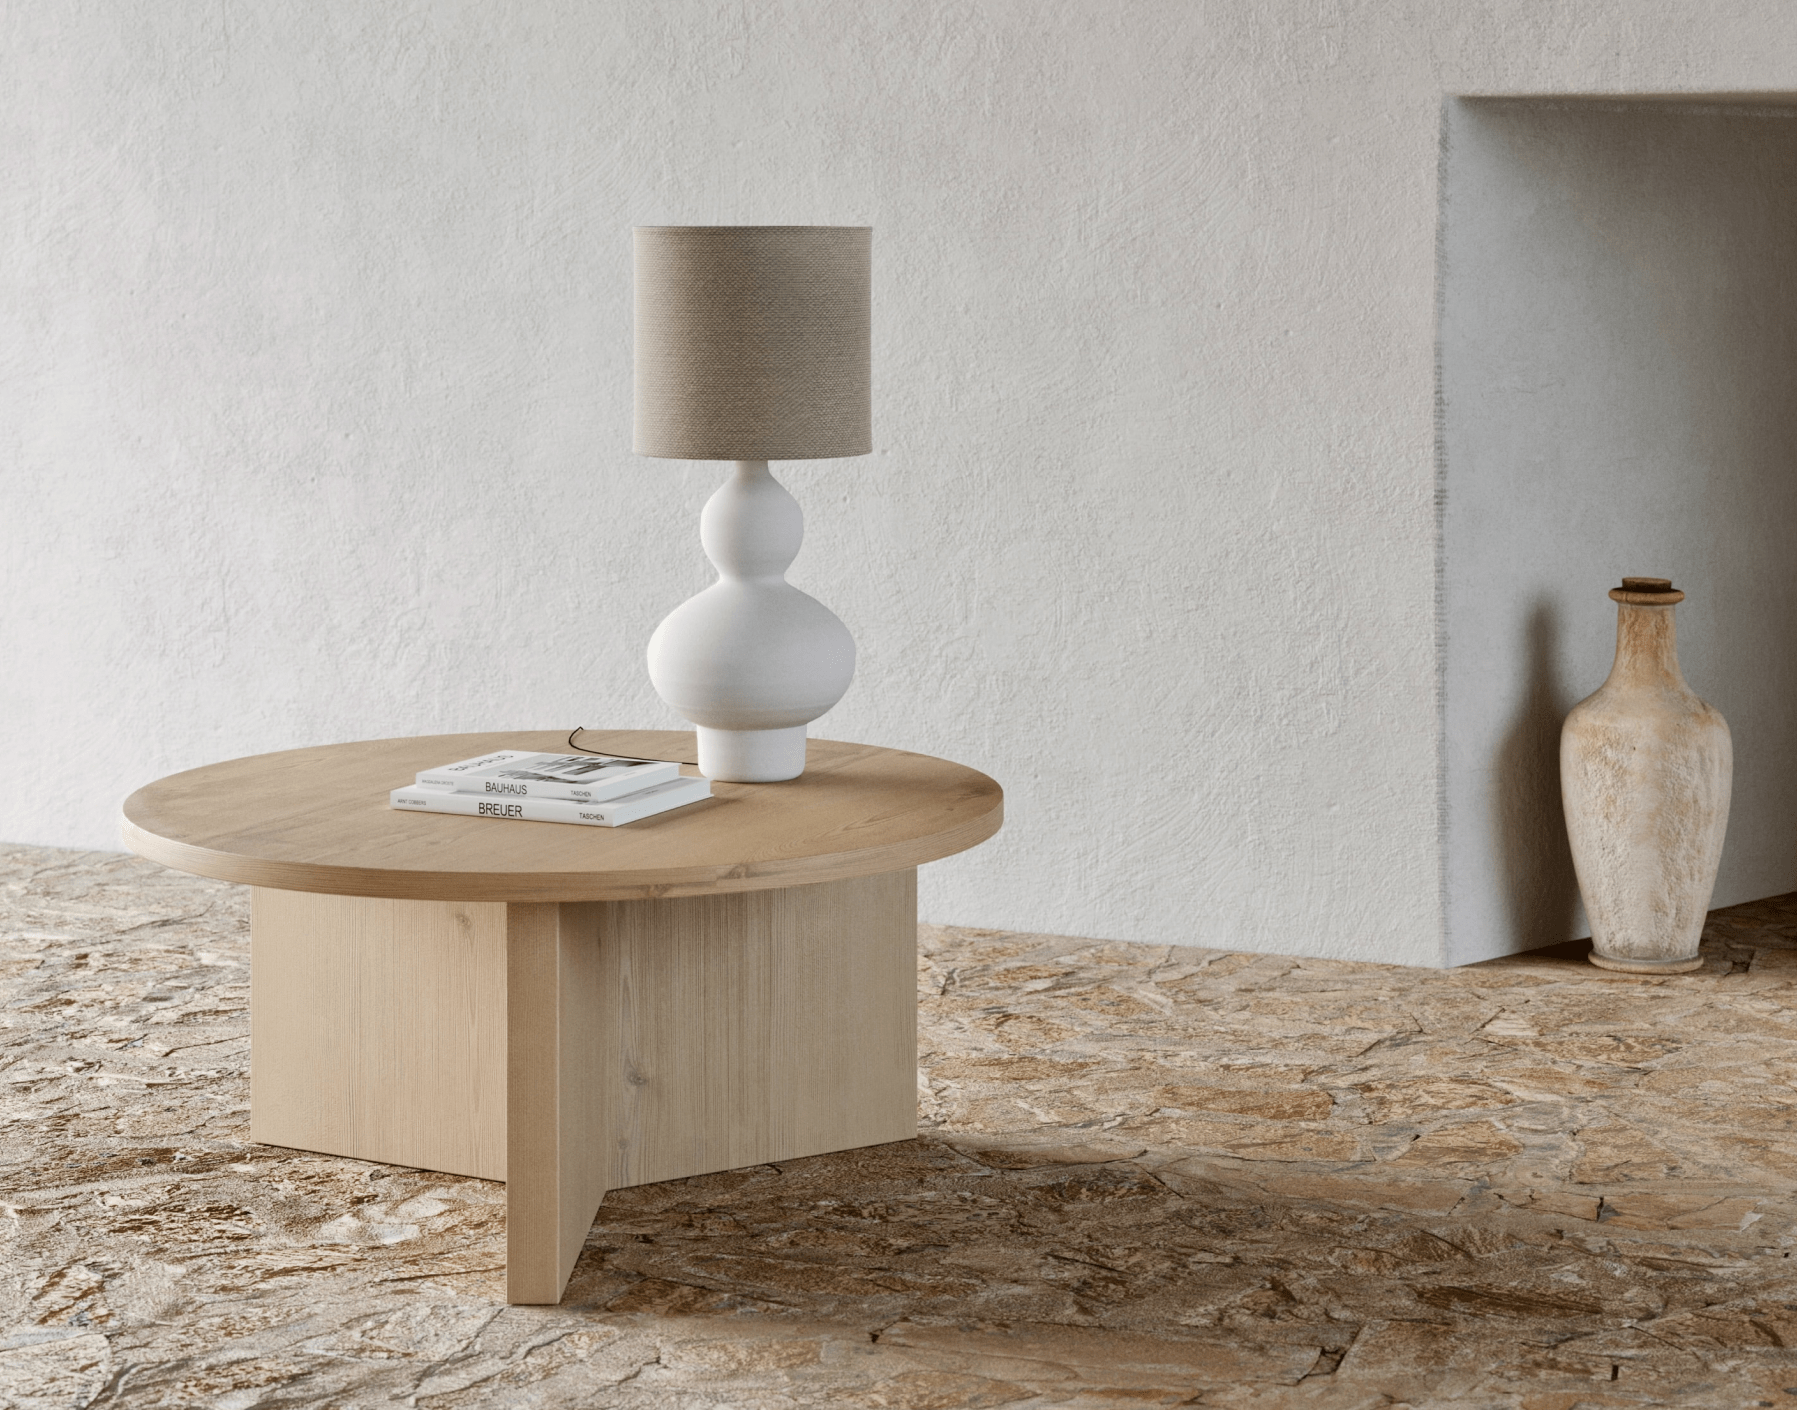 minimalist interior design neutral palette min